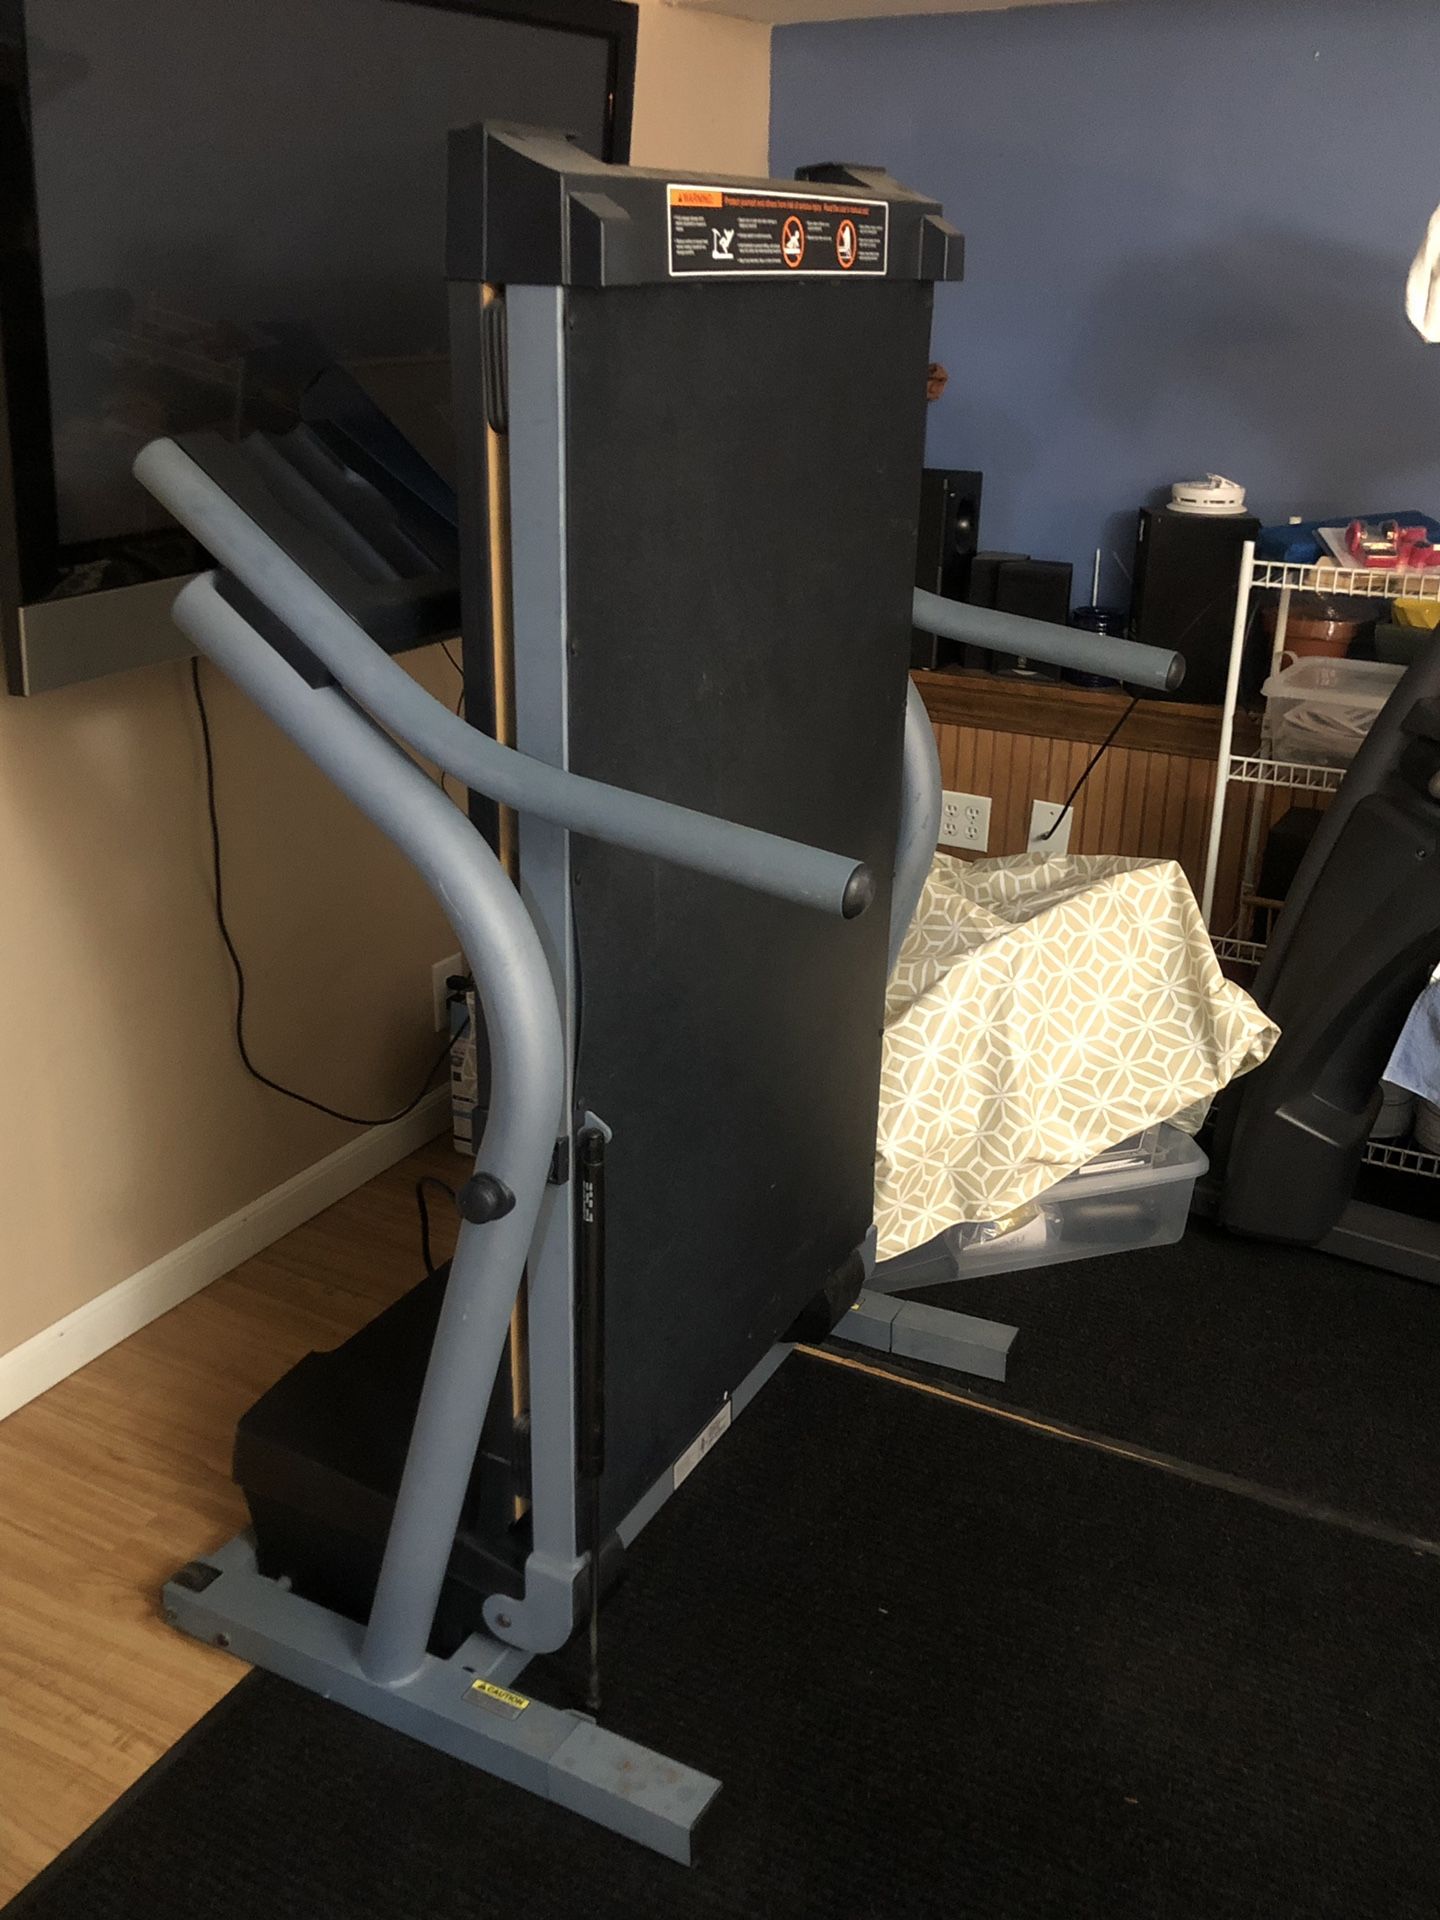 Nordictrack exp1000 treadmill